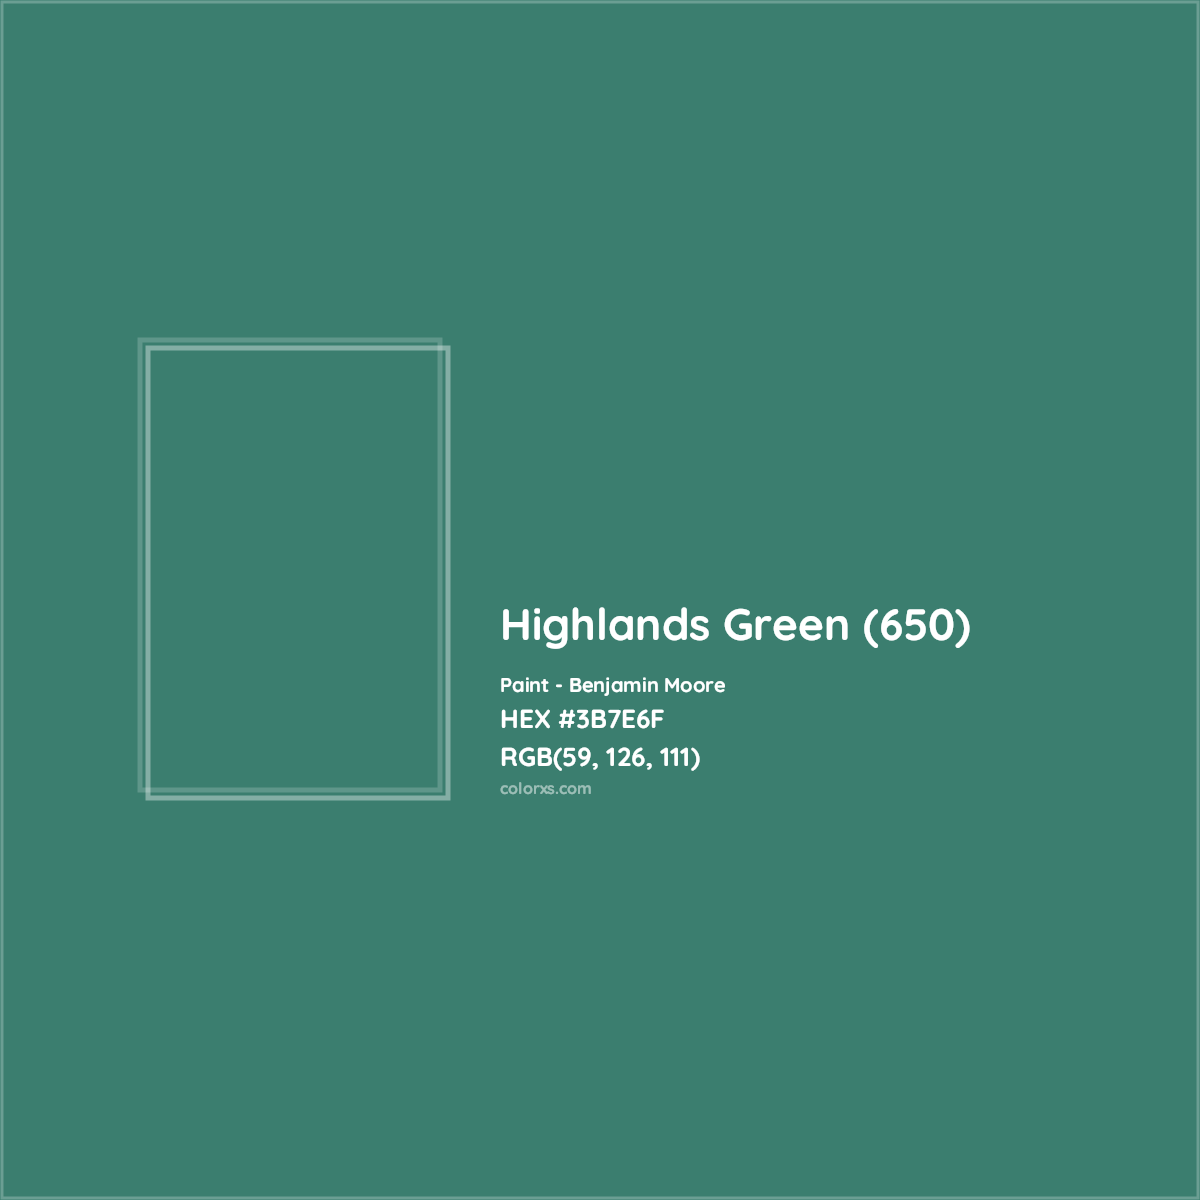 HEX #3B7E6F Highlands Green (650) Paint Benjamin Moore - Color Code